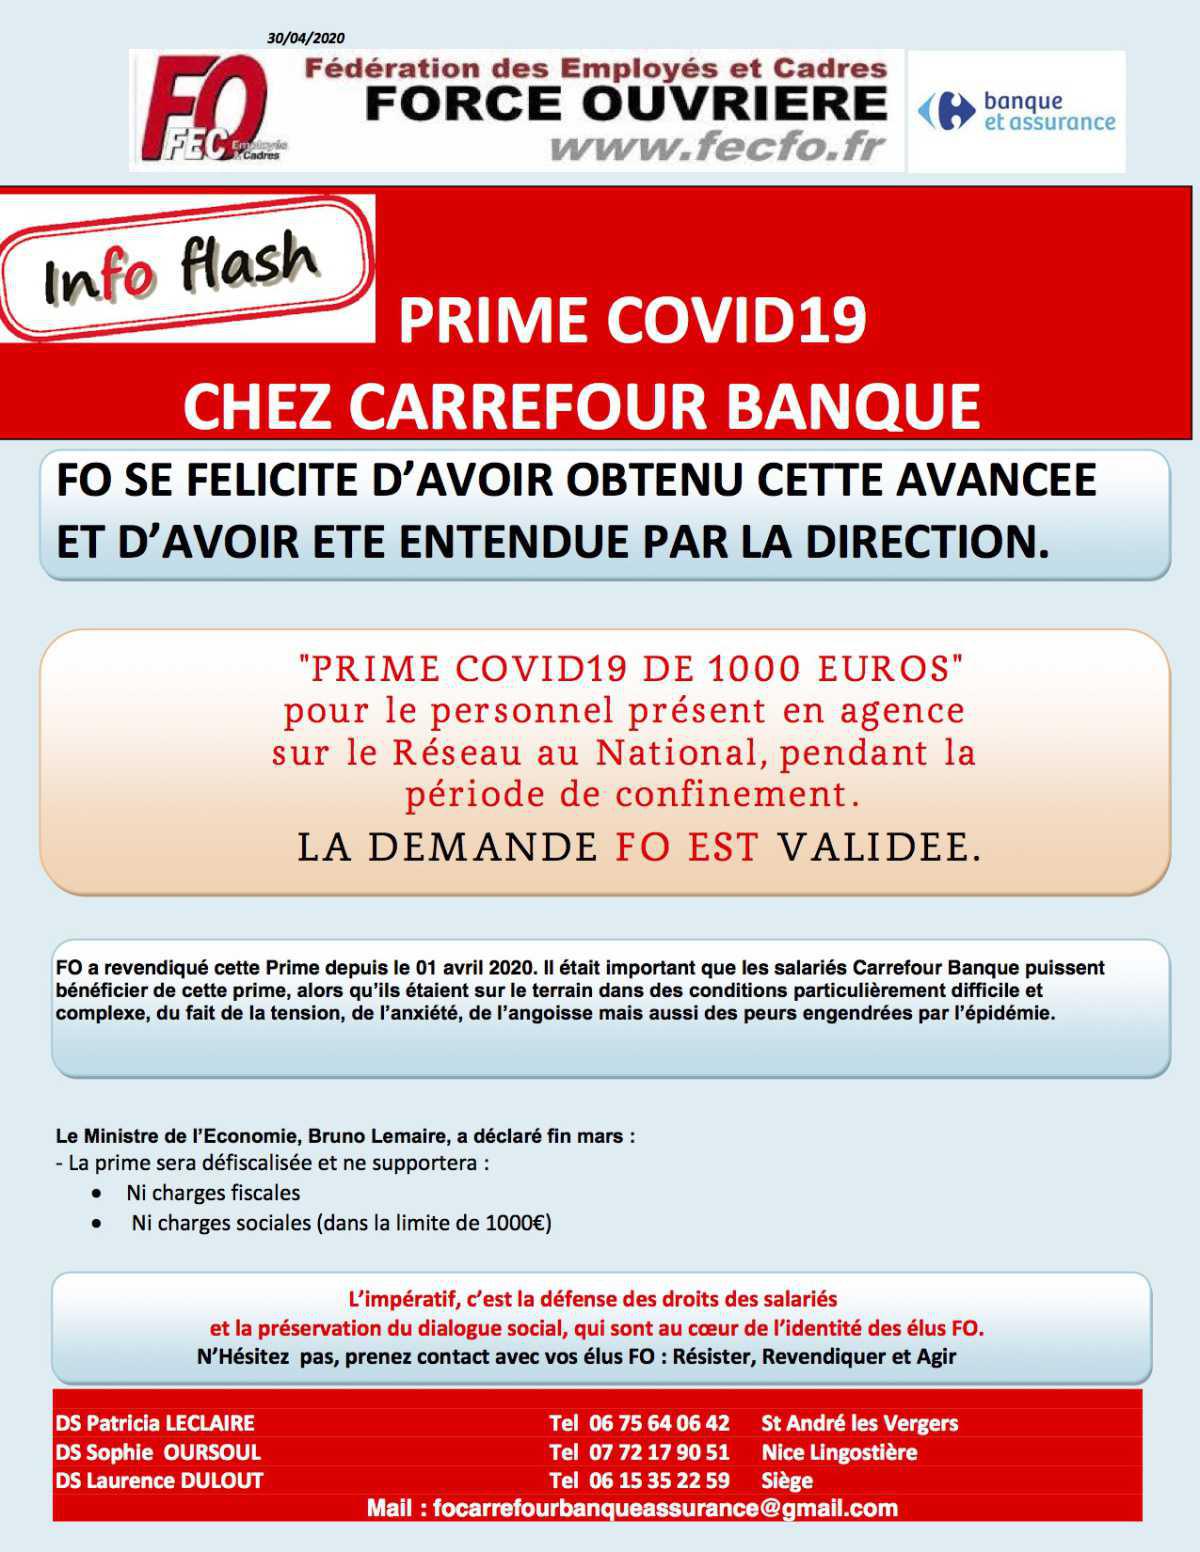 Carrefour Banque: La demande de FO est validée!